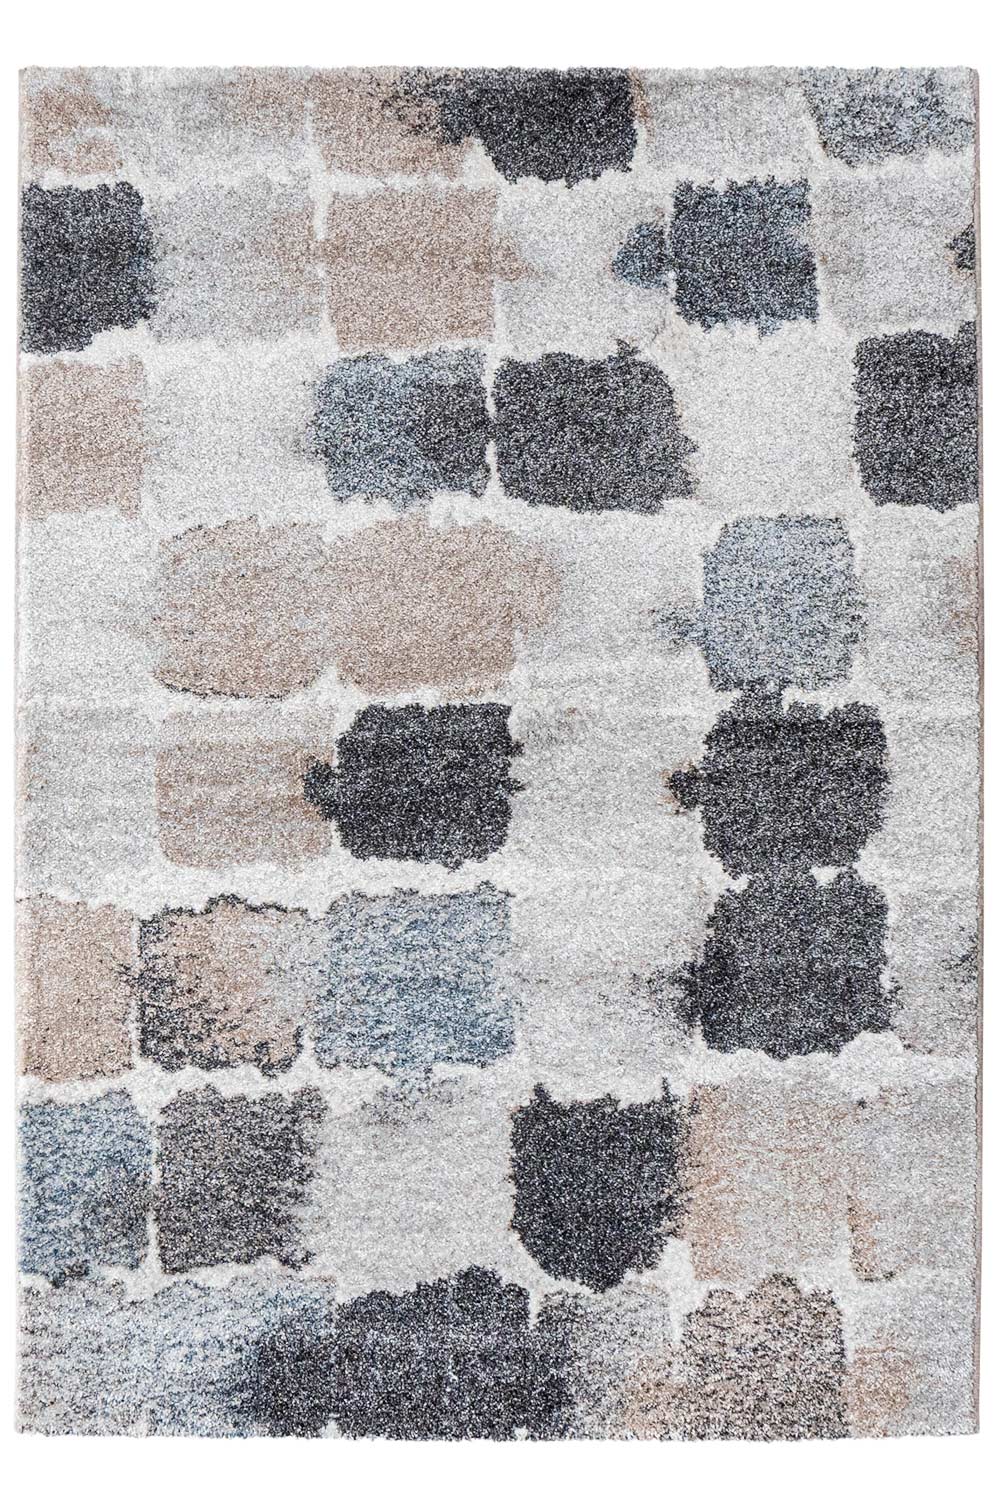 Kusový koberec Roma 01/ODO 140x200 cm